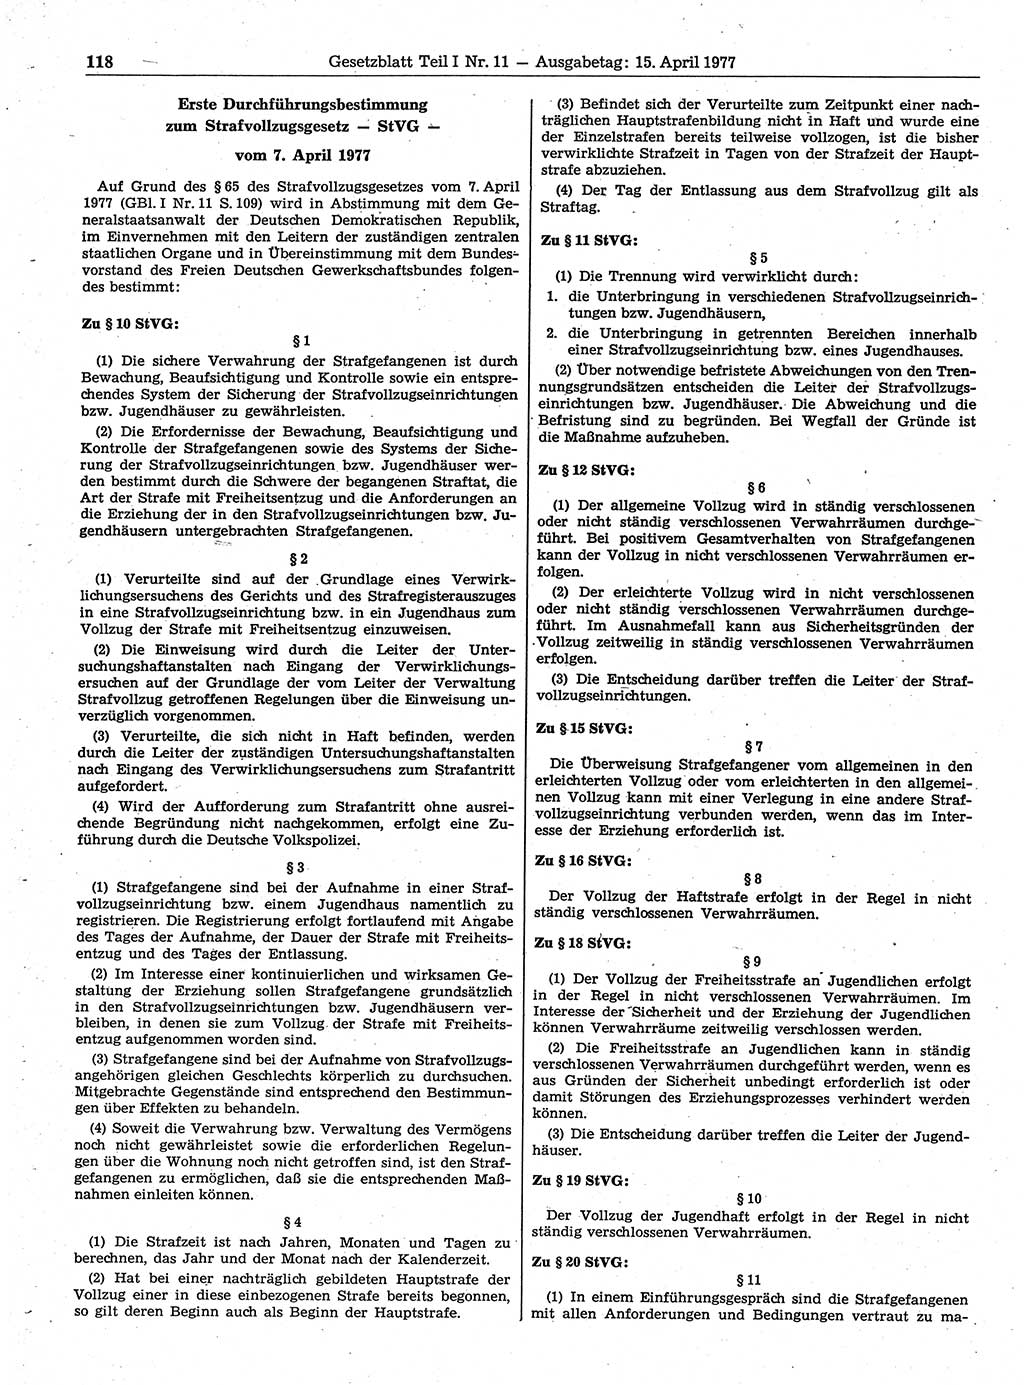 Gesetzblatt (GBl.) der Deutschen Demokratischen Republik (DDR) Teil Ⅰ 1977, Seite 118 (GBl. DDR Ⅰ 1977, S. 118)